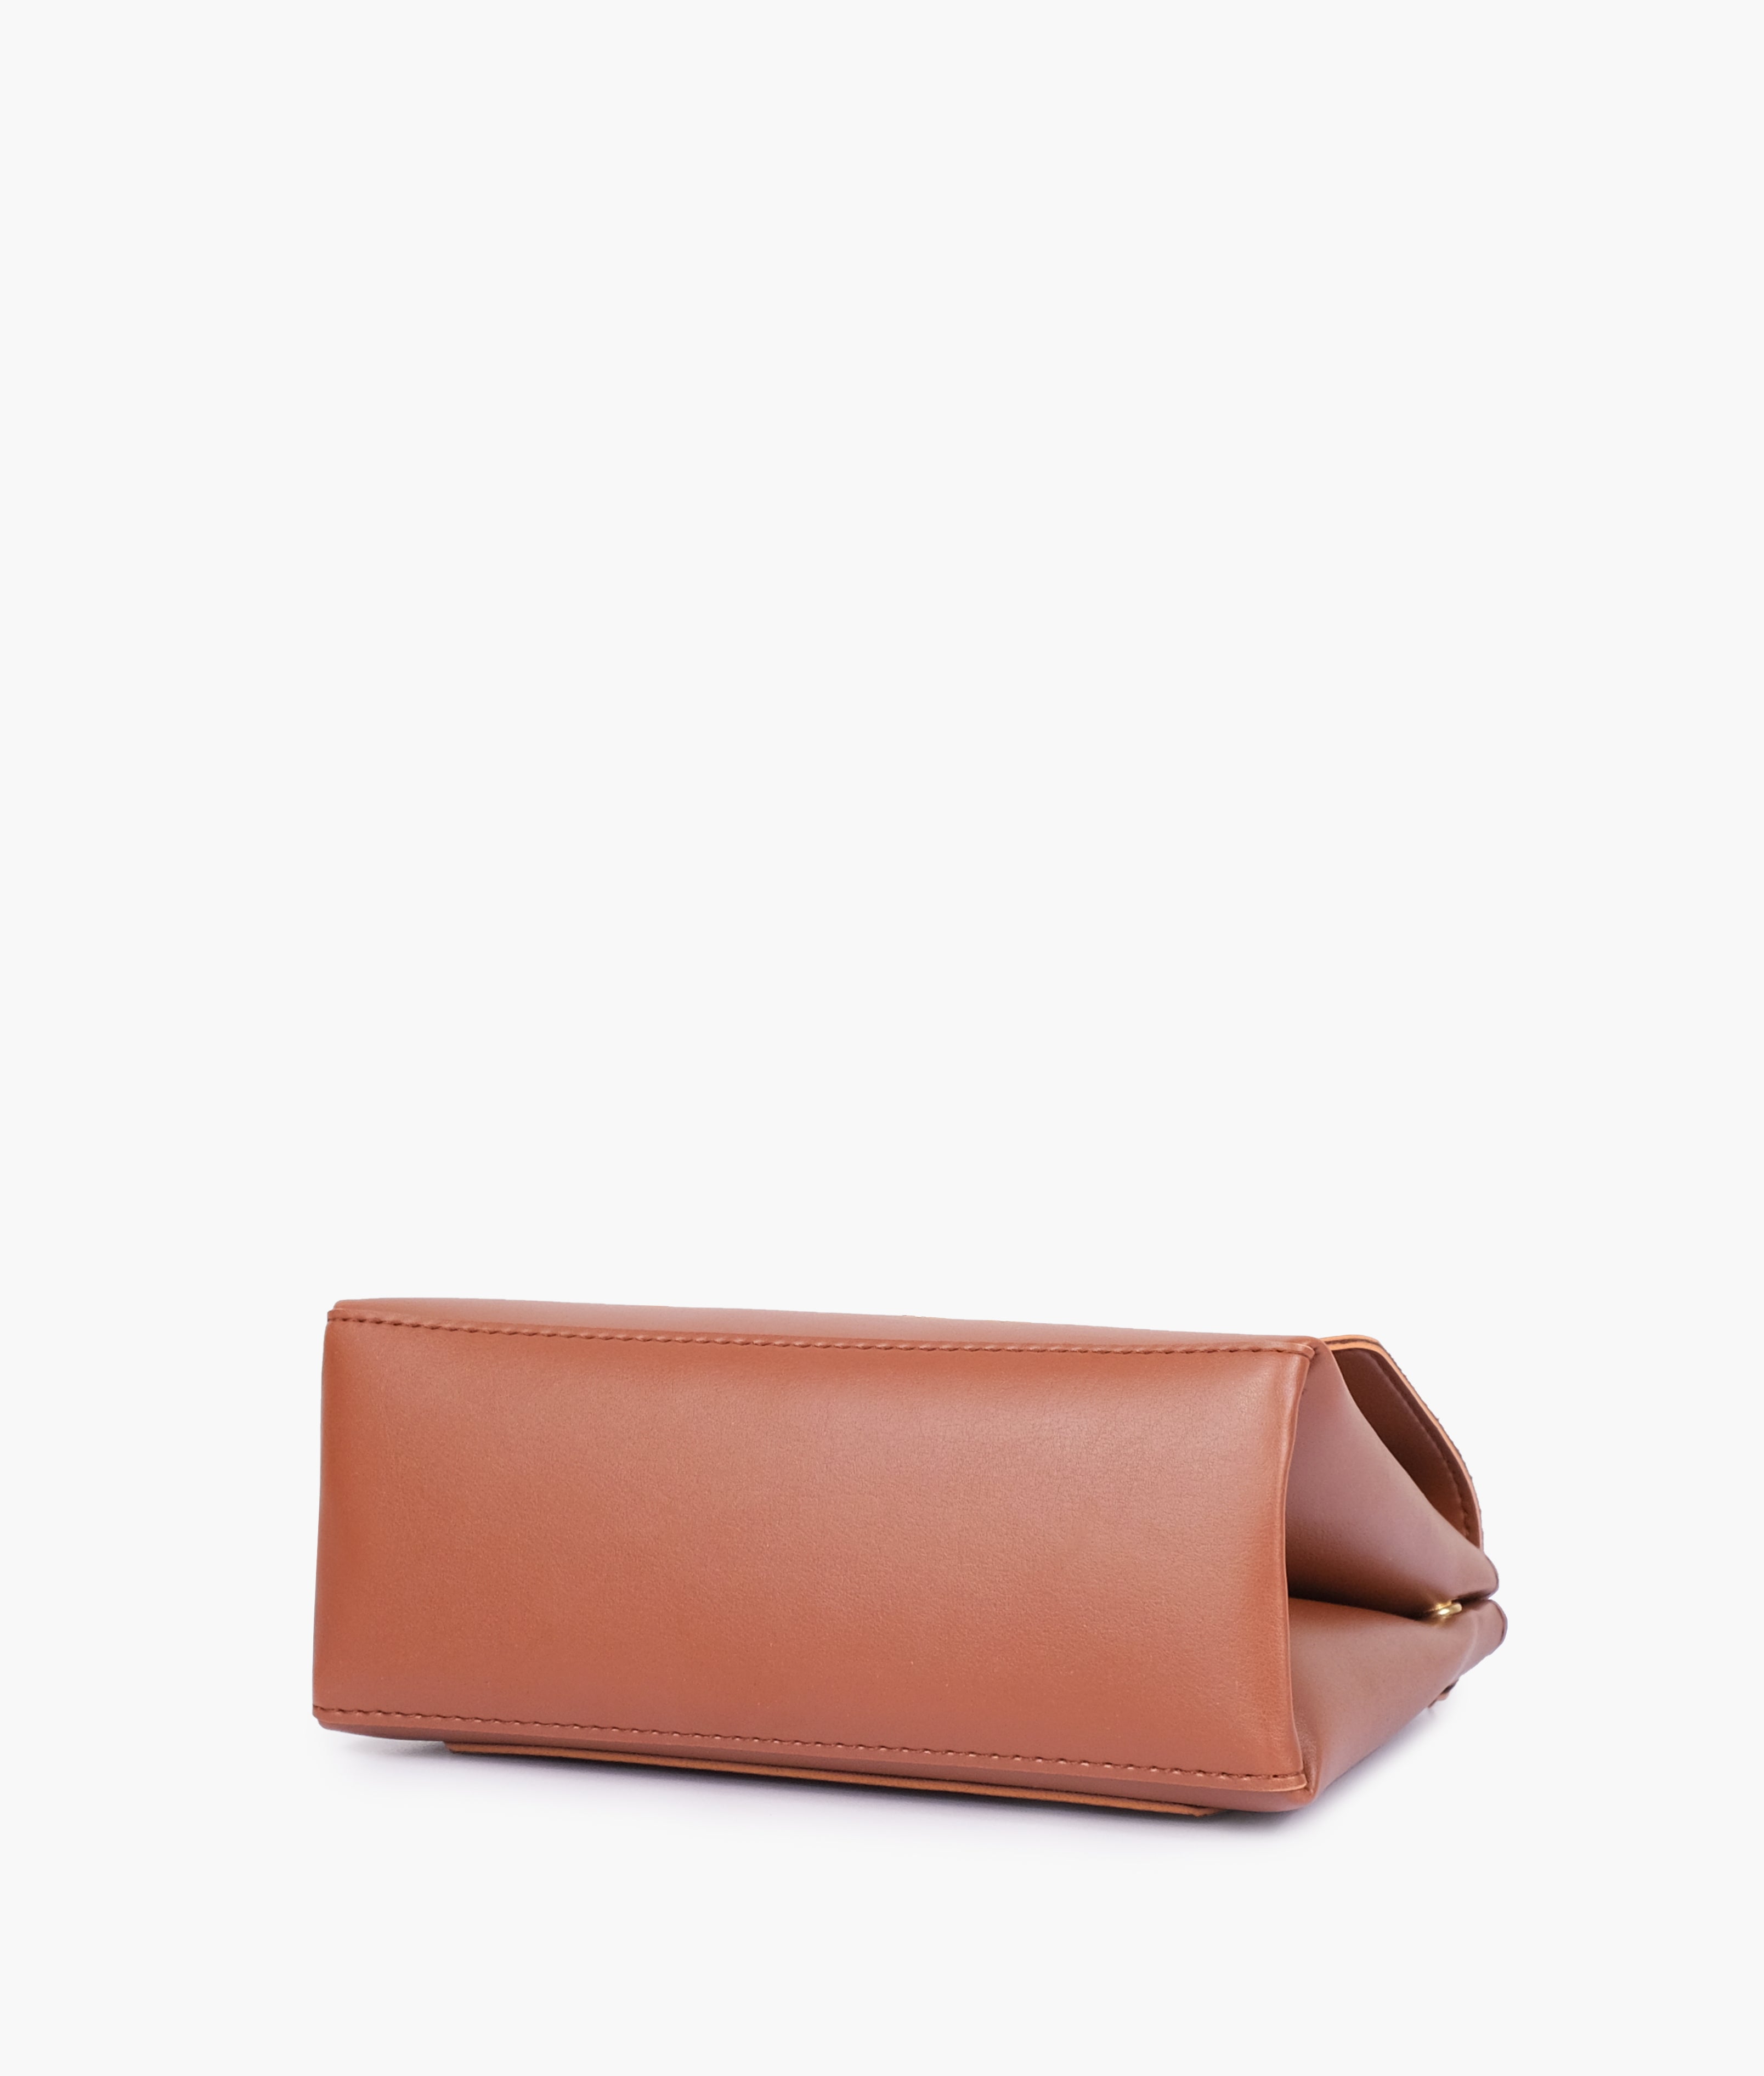 Brown mini top-handle bag